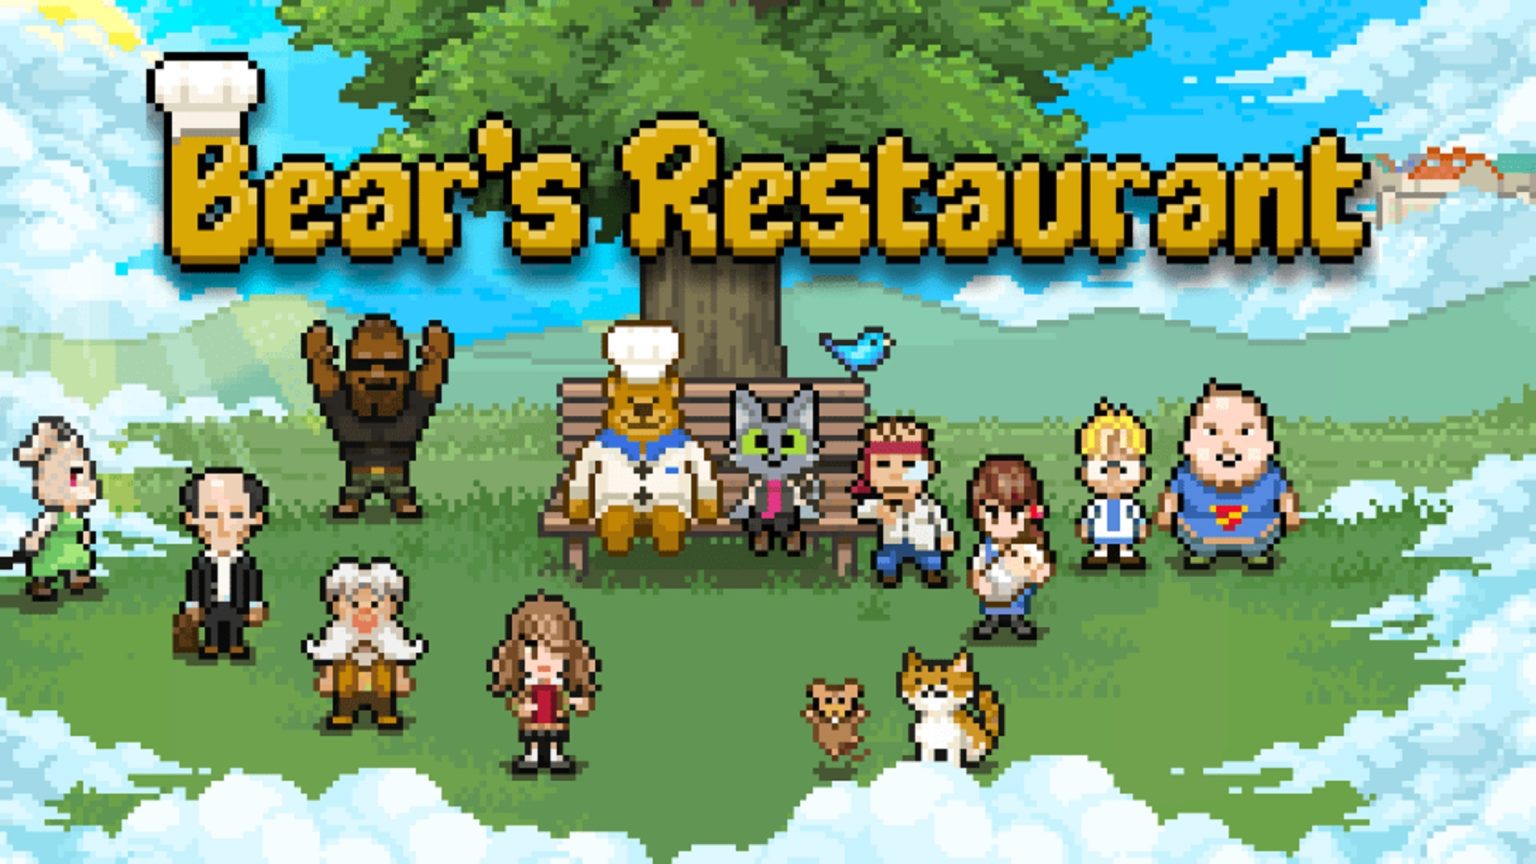 instal Bear Restaurant free